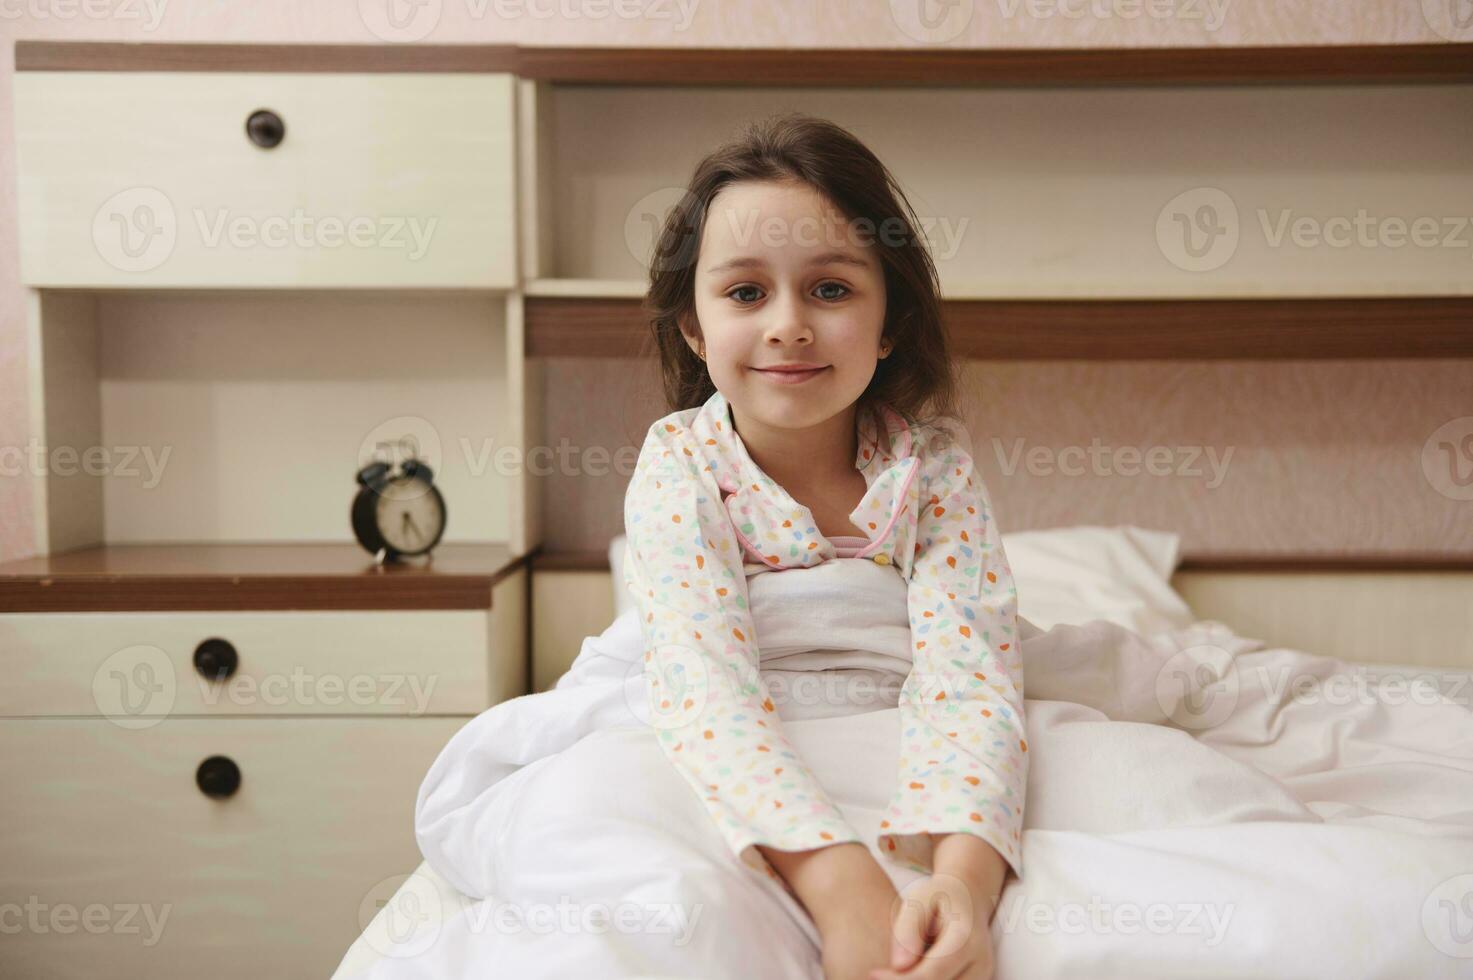 terwijl Smaak Faeröer lief weinig kind meisje in pyjama, glimlachen op zoek Bij camera, zittend  in bed Bij haar knus slaapkamer. gelukkig kinderen 23730876 stockfoto bij  Vecteezy